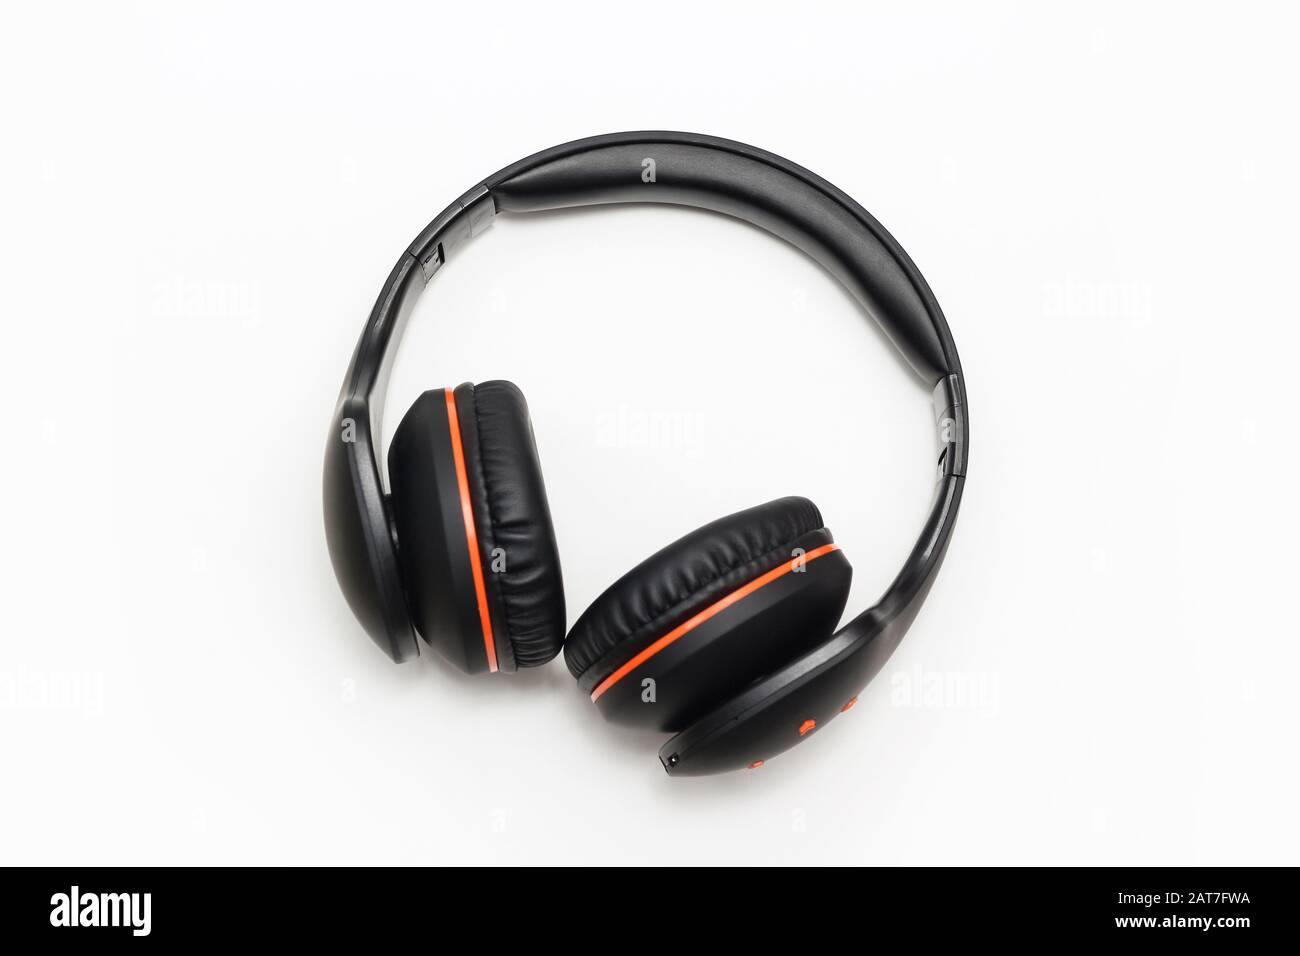 large black headphones on white background Stock Photo